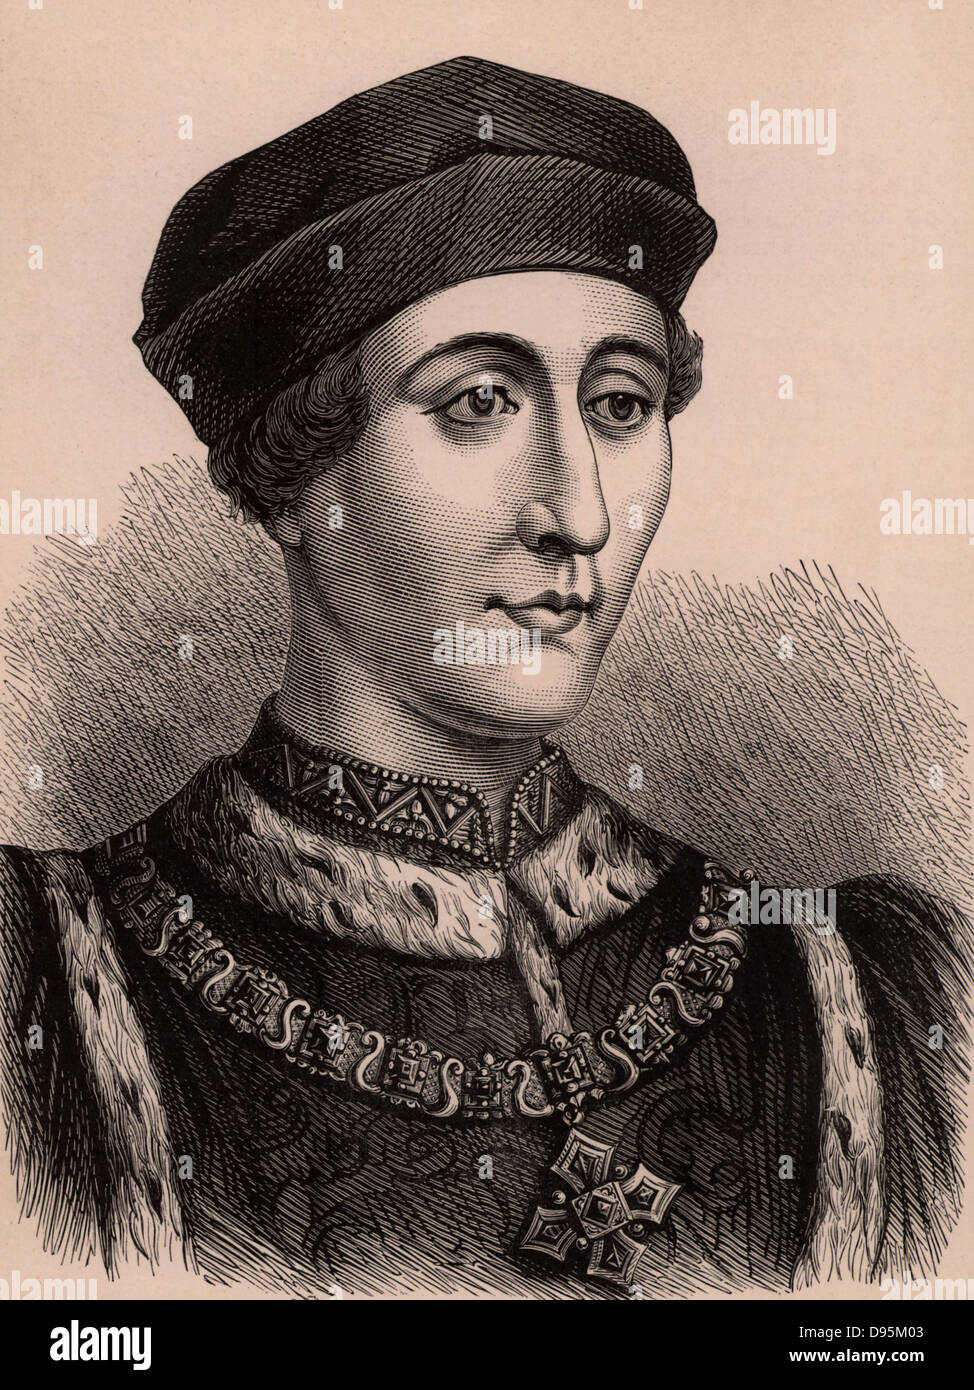 Henry VI (1421-71) König von England von 1422, das einzige Kind von Henry V und Katharina von Valois. Letzte Plantagenet König von England sein Thron von Edward IV 1461 usurpiert wurde. Henry wurde ermordet, 21. Mai 1471. Holzstich c 1900. Stockfoto